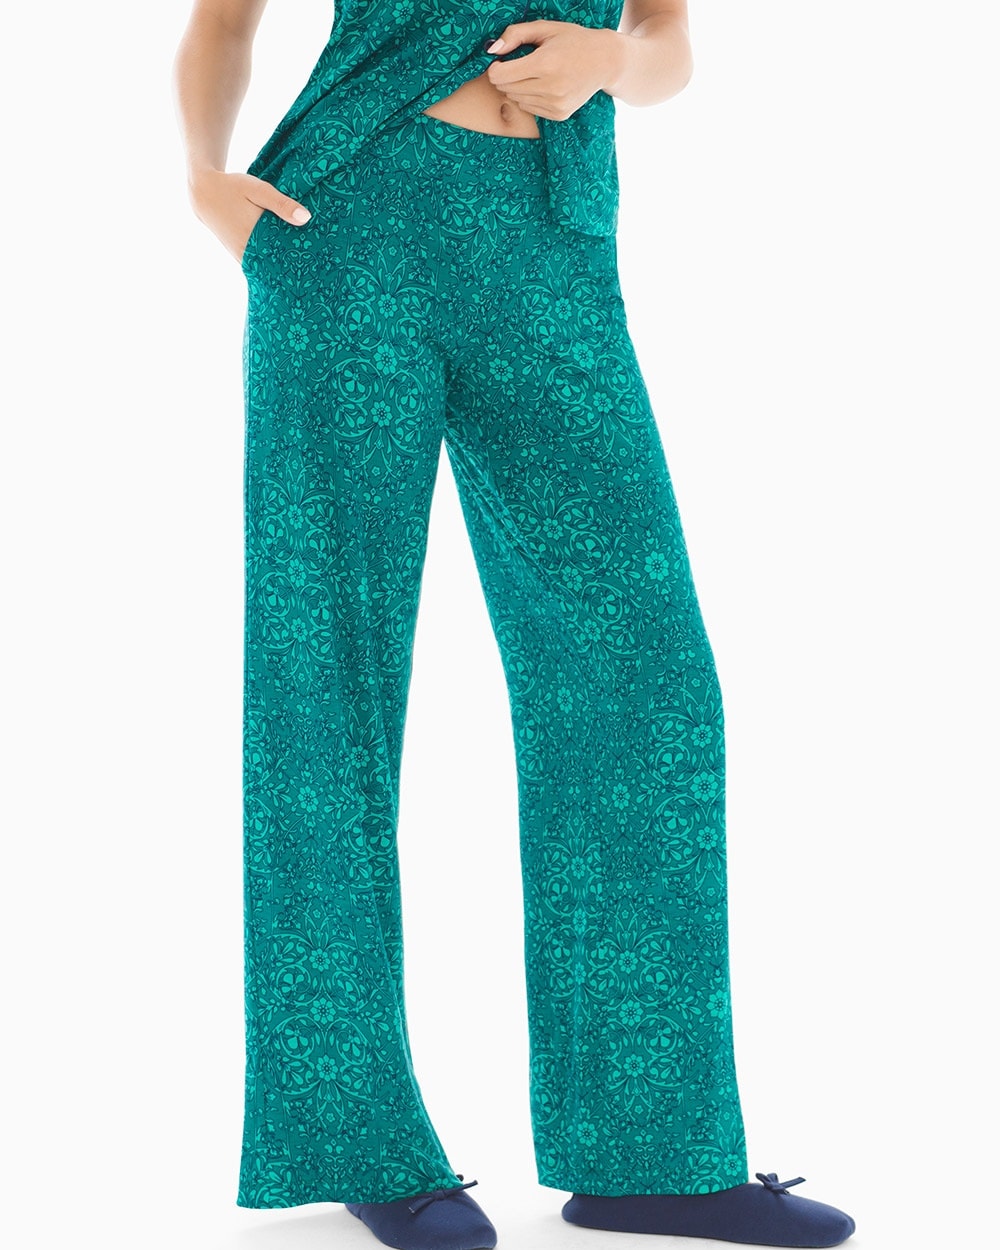 Cool Nights Pajama Pants Illumination Green Envy TL